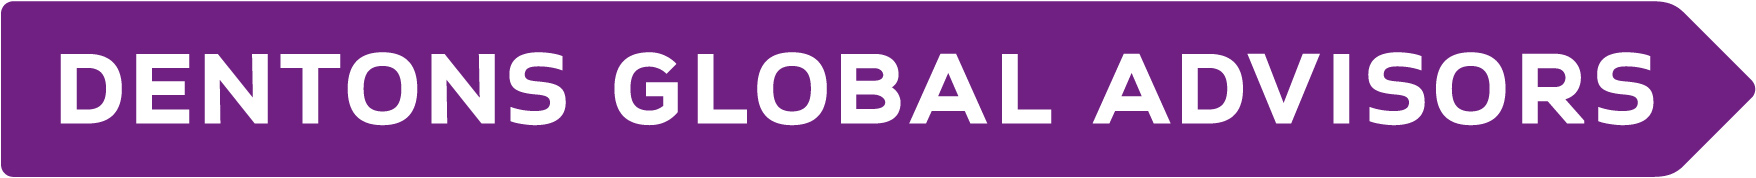 02.2_Dentons Global Advisors logo